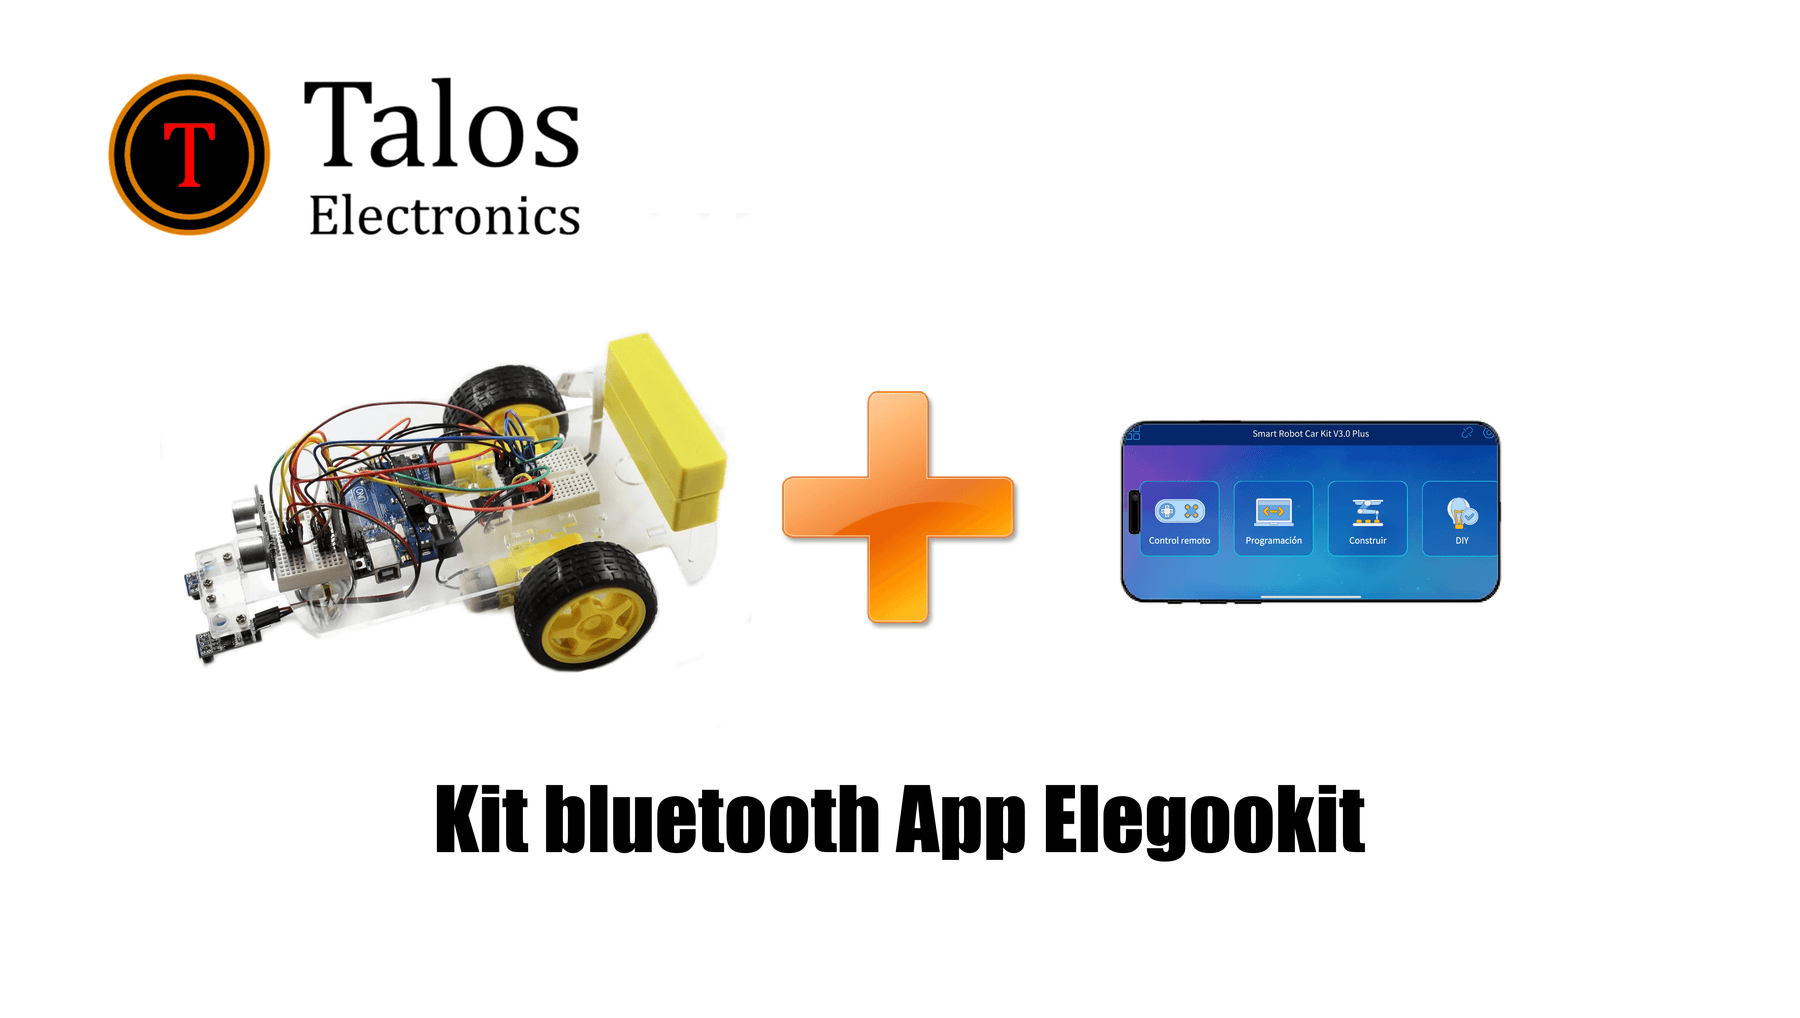 Kit bluetooth App Elegookit